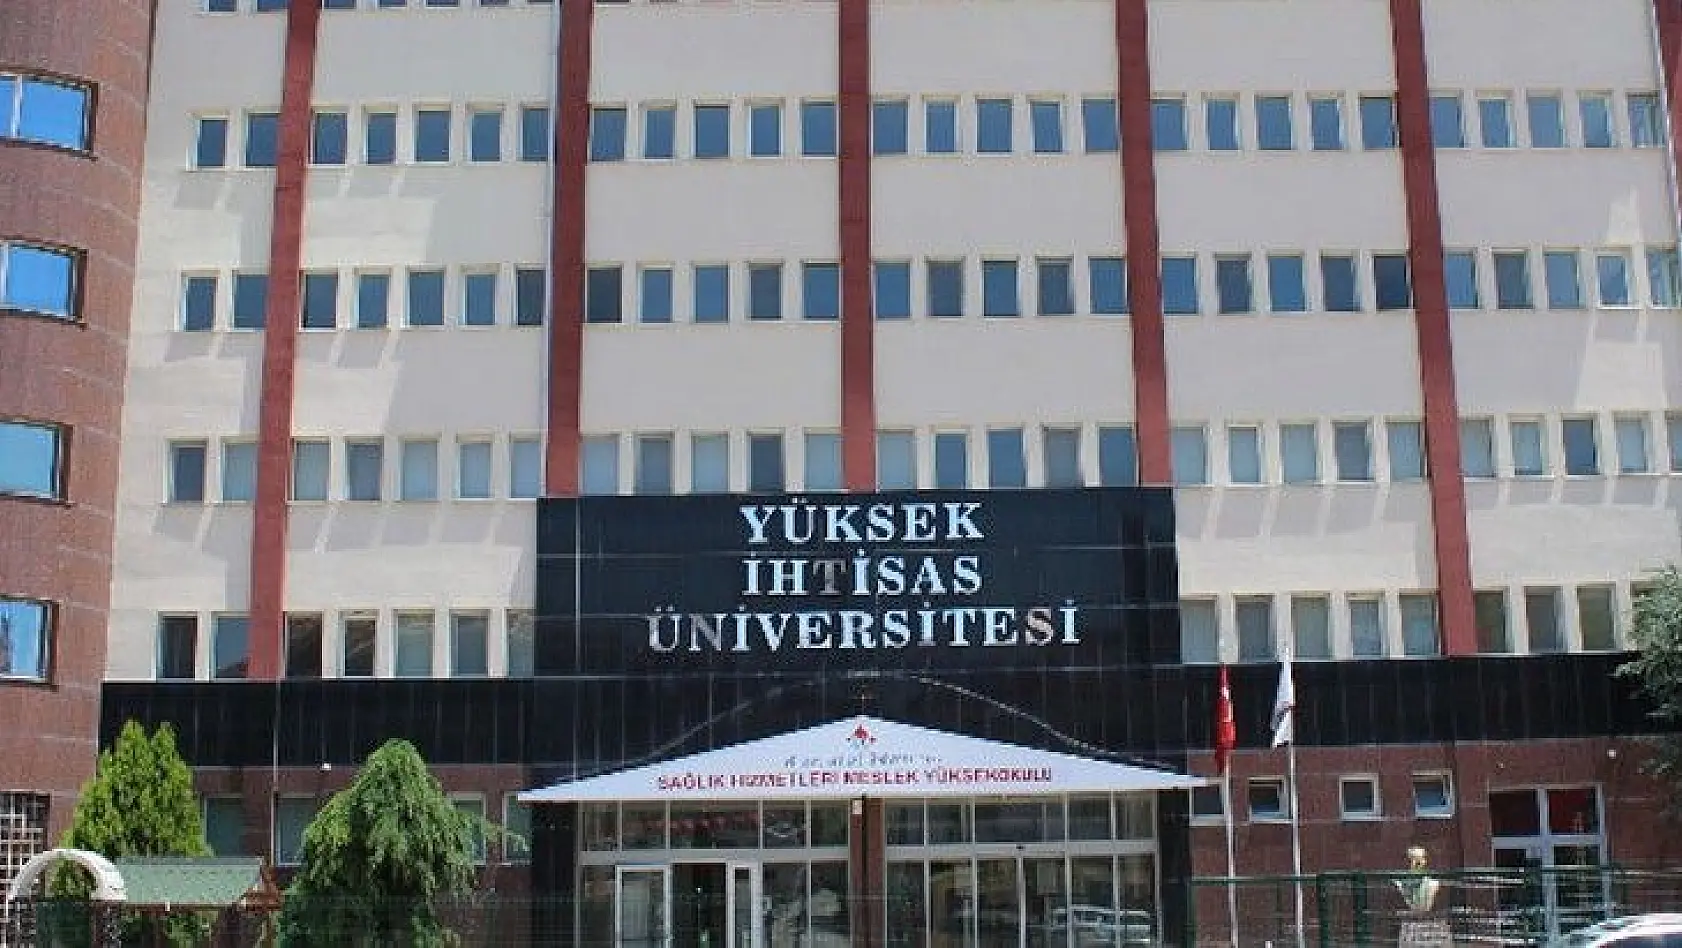 Yüksek İhtisas Üniversitesi 52 Öğretim Üyesi alıyor